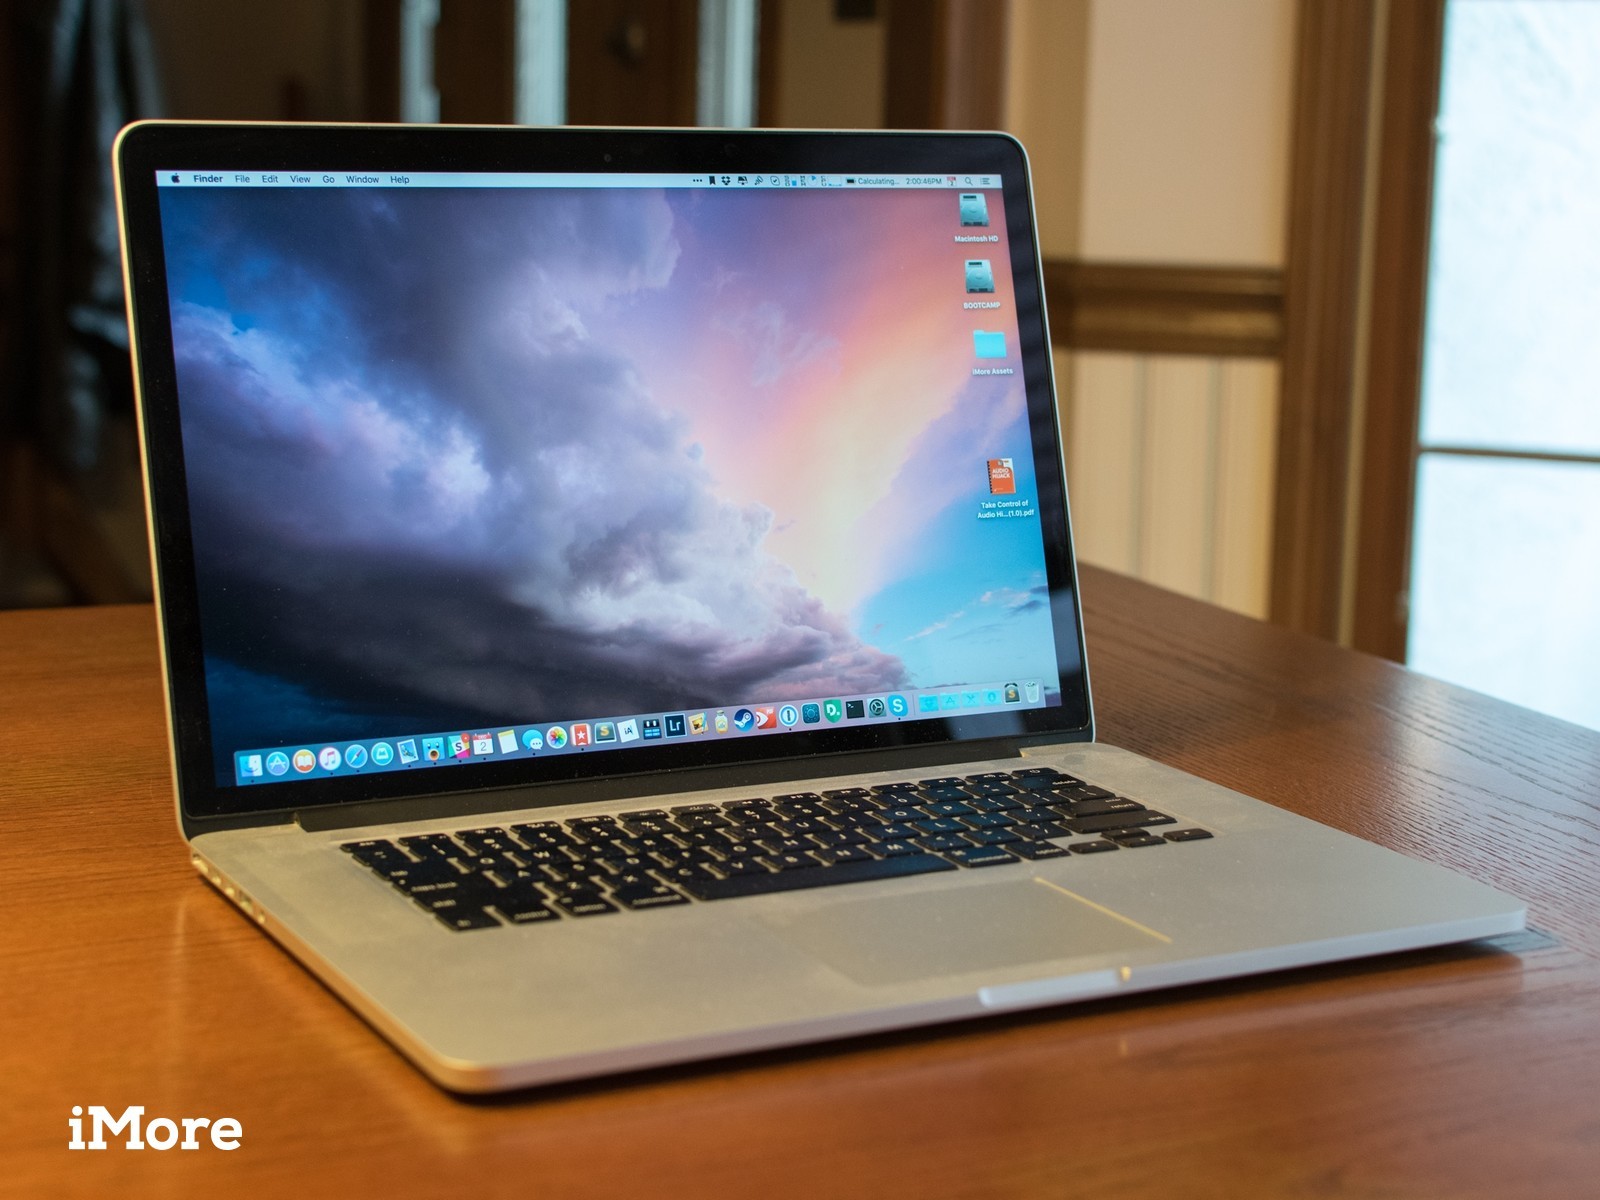 Macbook pro 2015 models